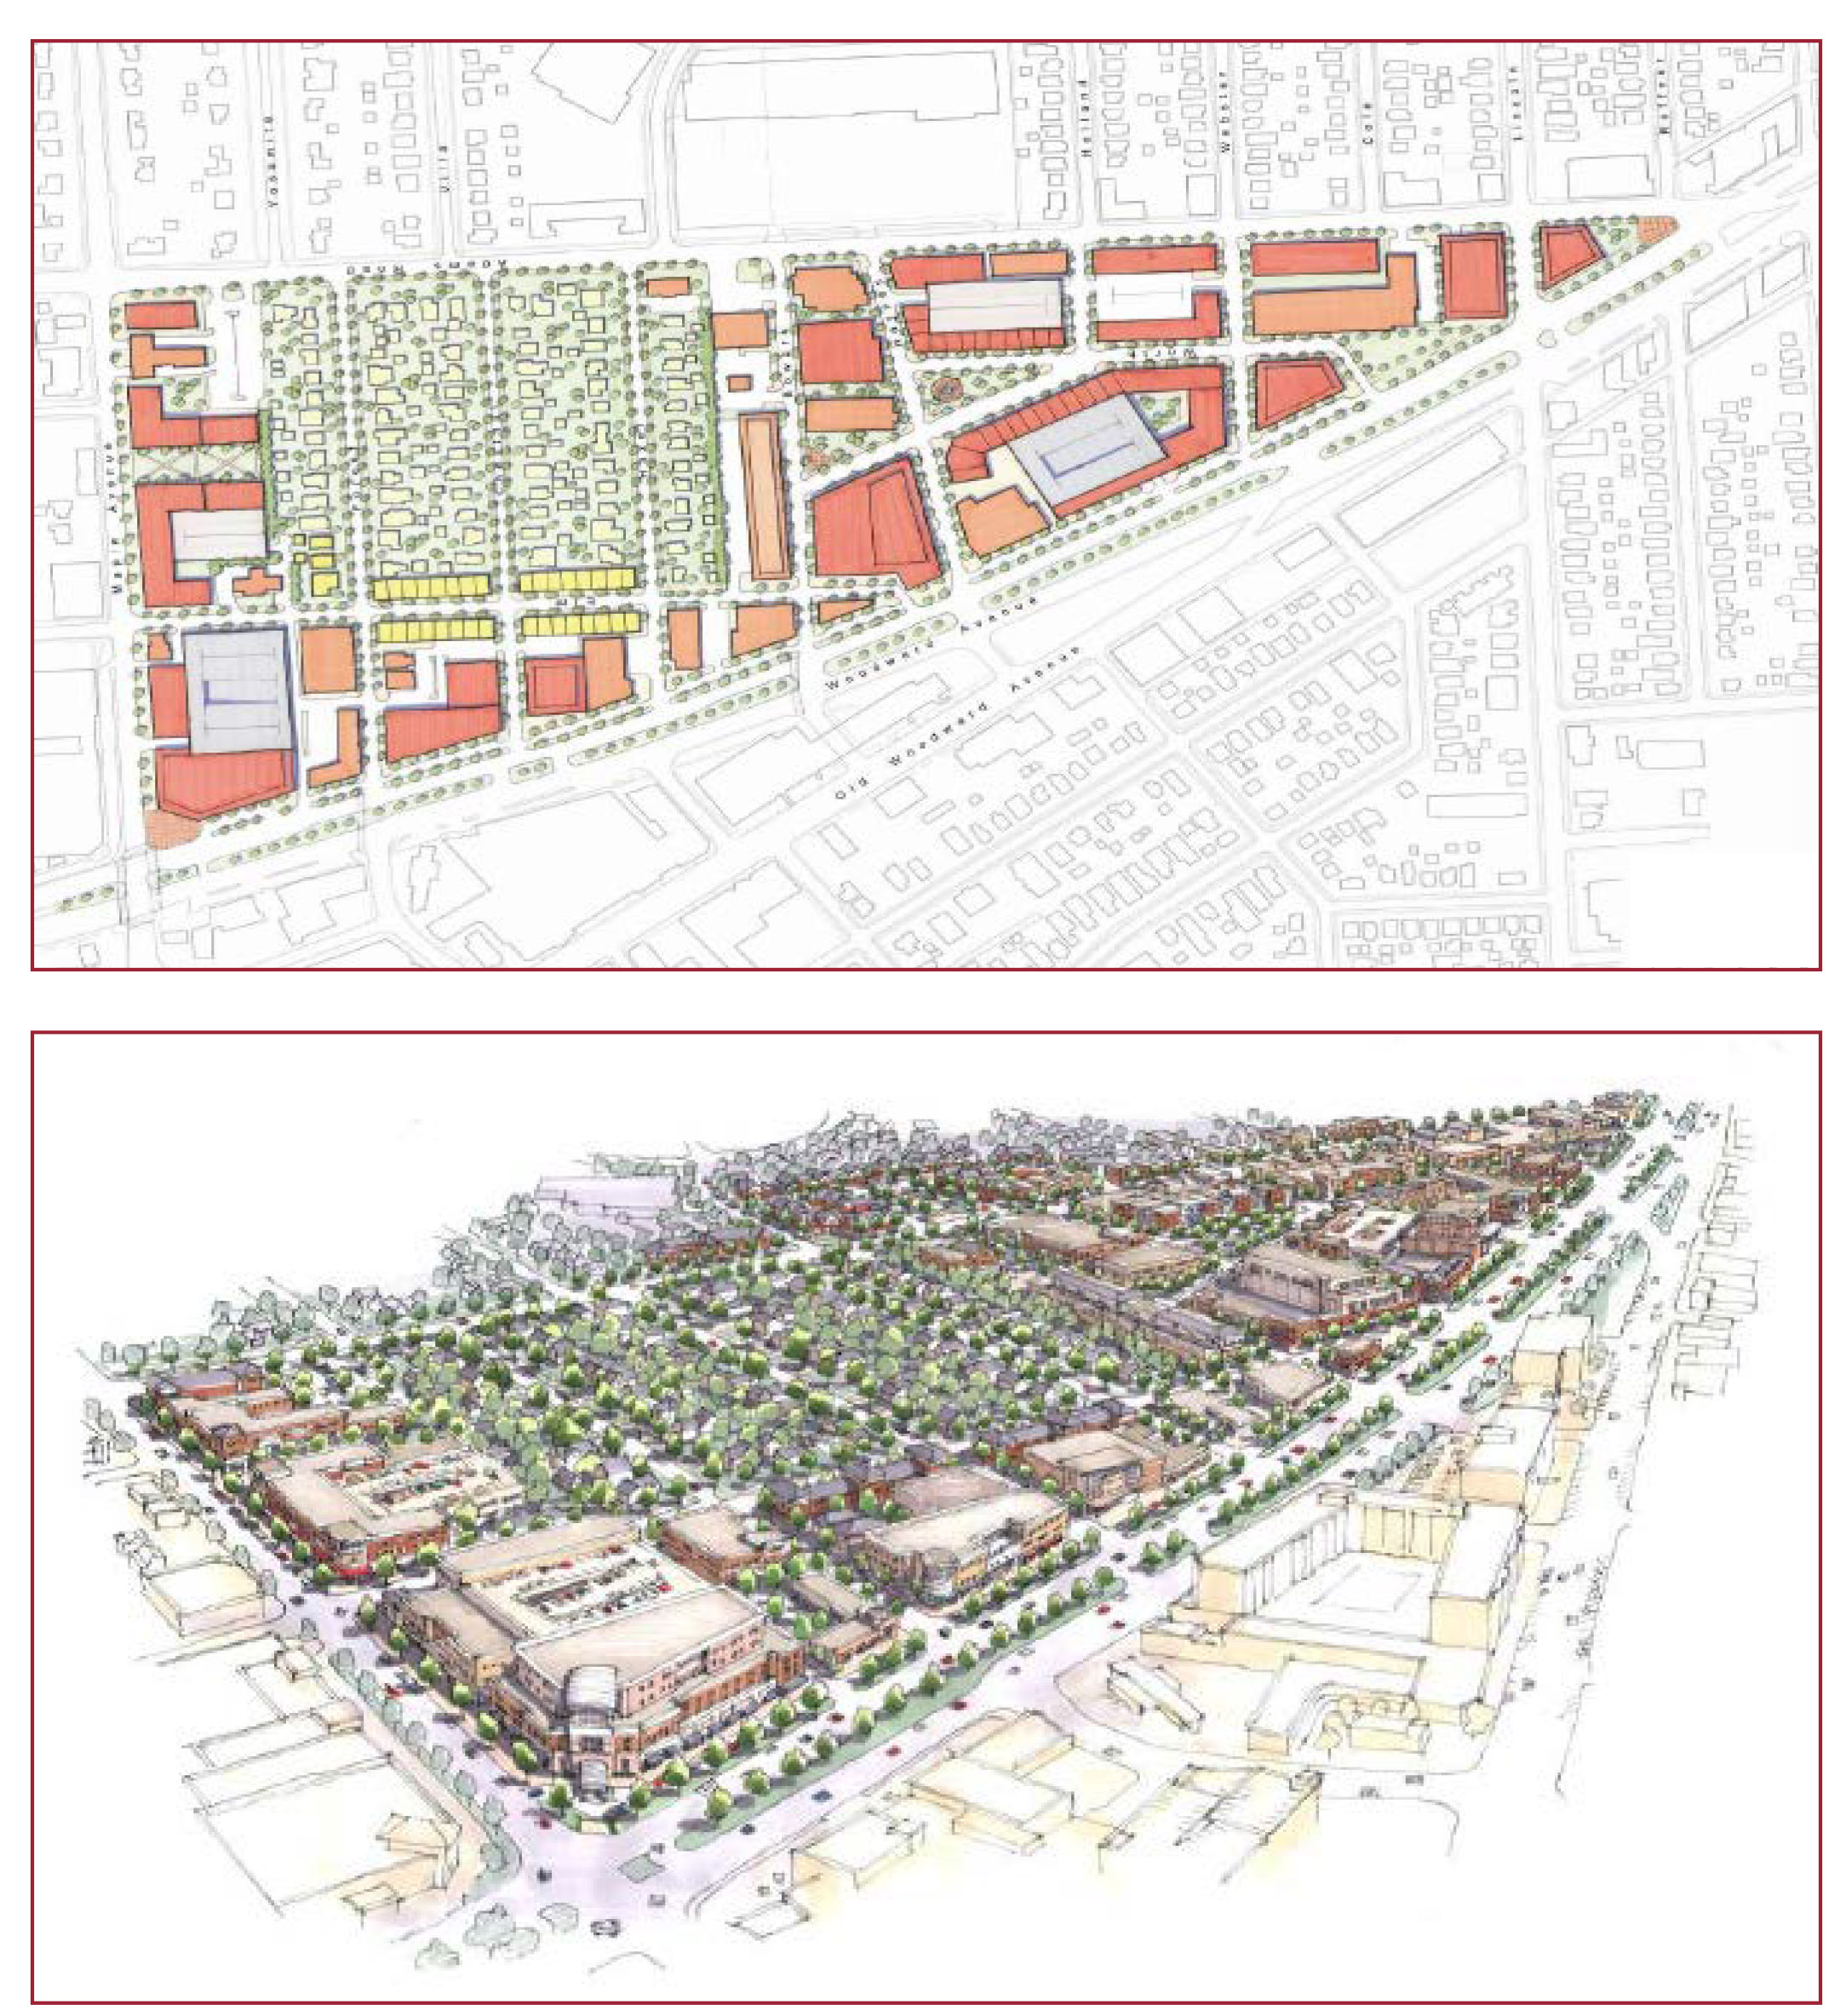 Downtown Birmingham Plan 